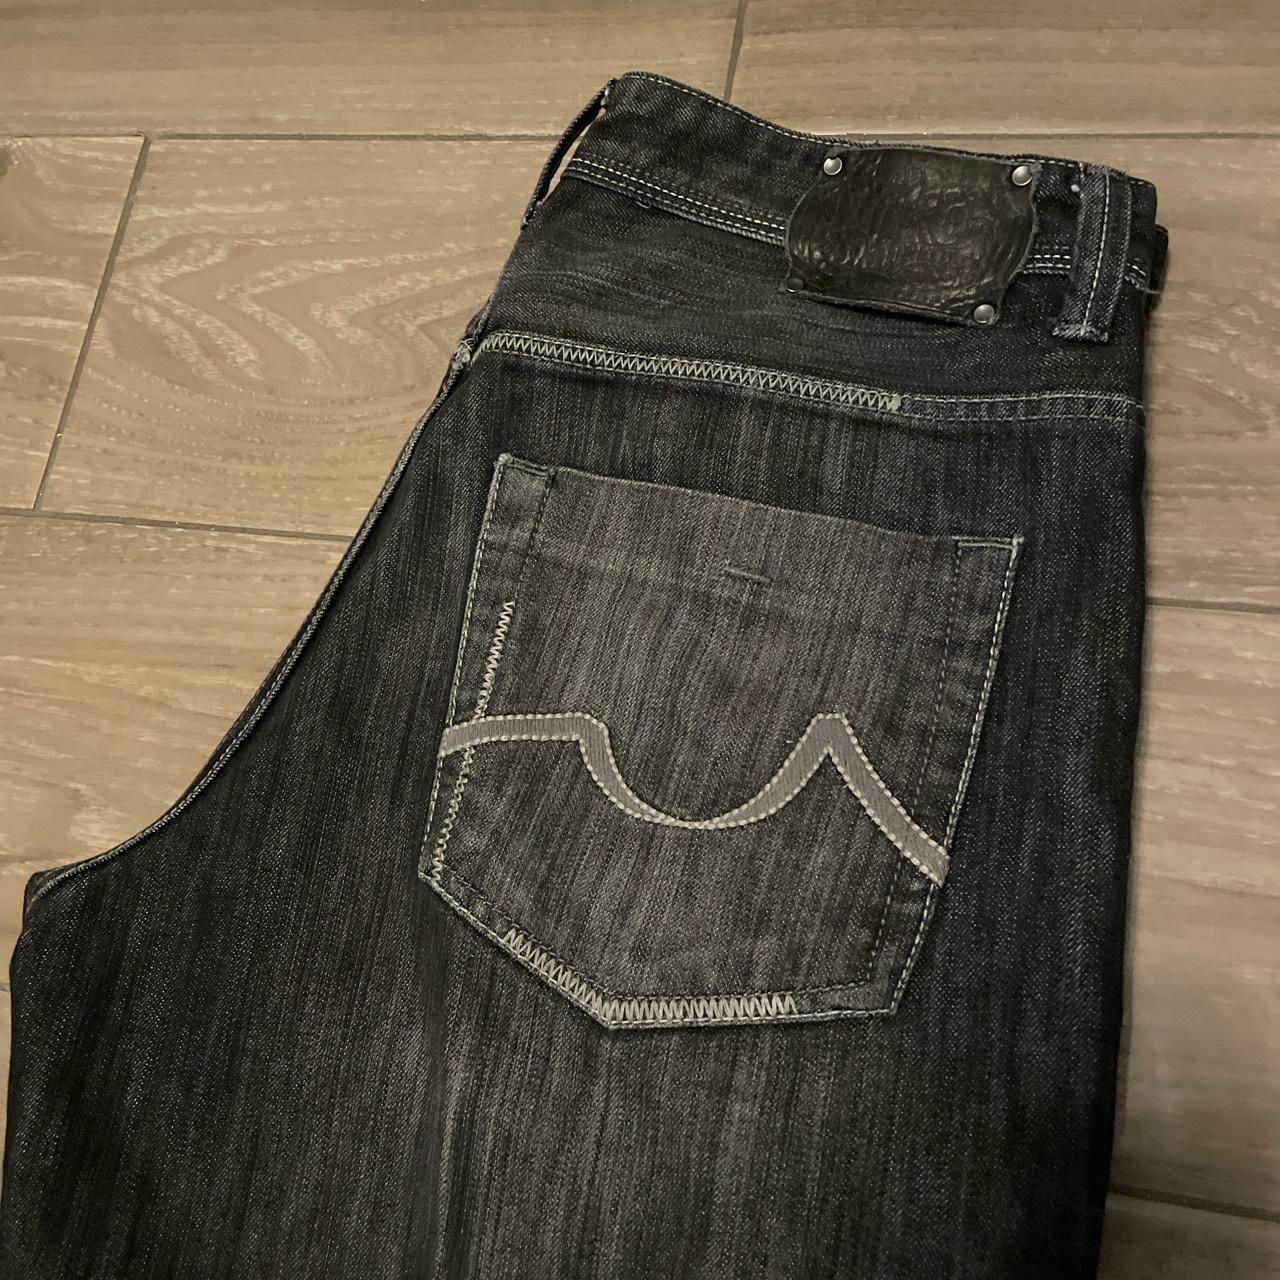 Ecko Unltd. jeans Y2K W34 L34 Leg opening 9.5 - Depop